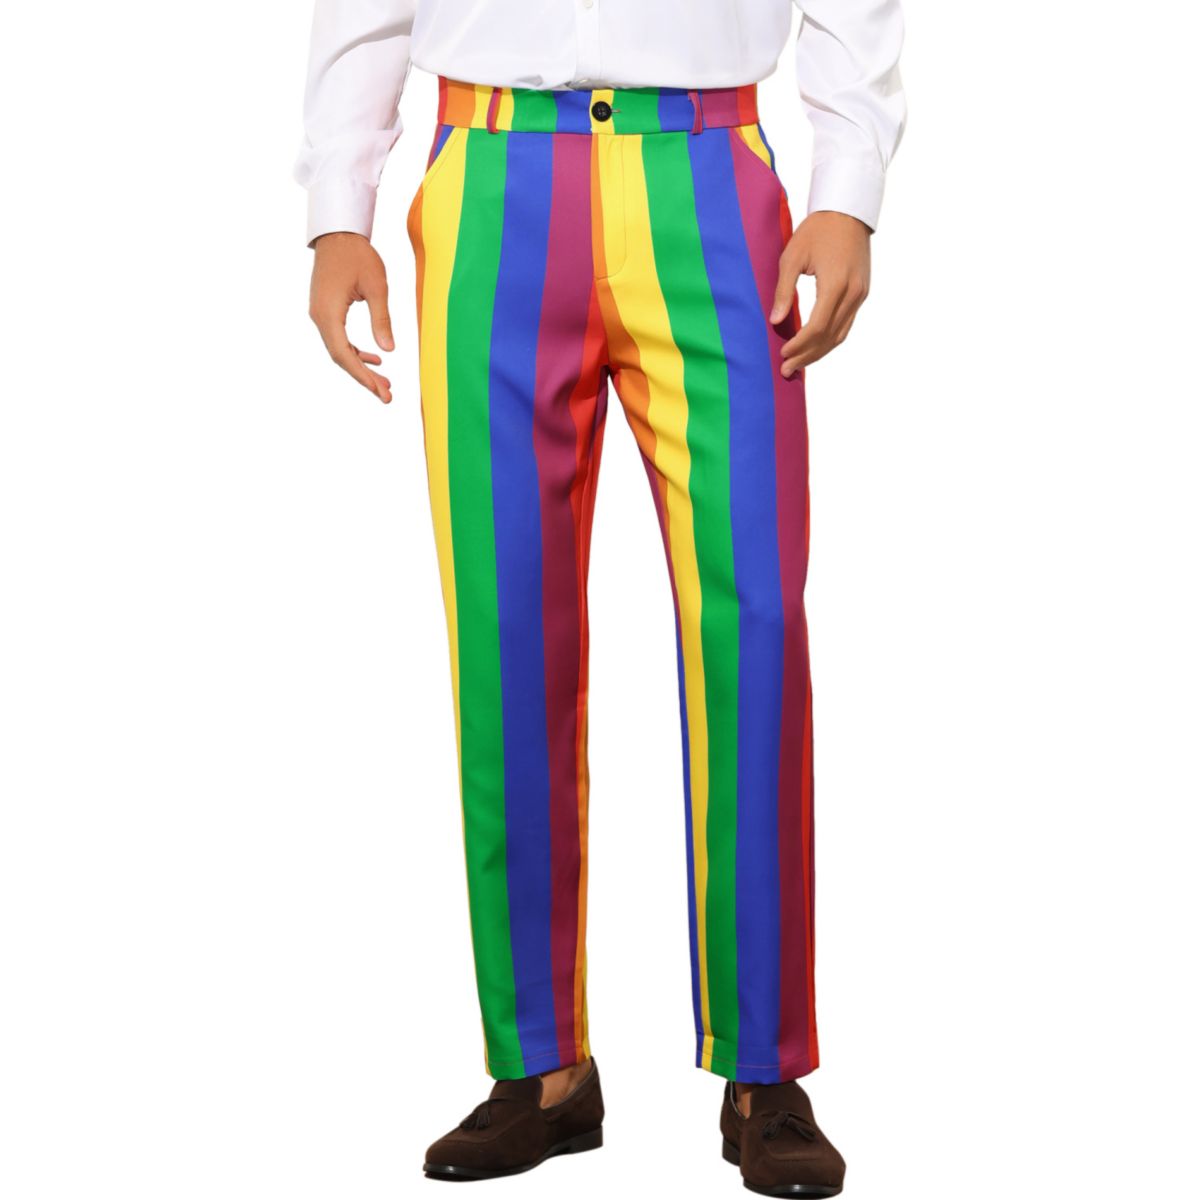 Rainbow Pants For Men's Regular Fit Flat Front Color Block Stripe Dress Trousers Lars Amadeus